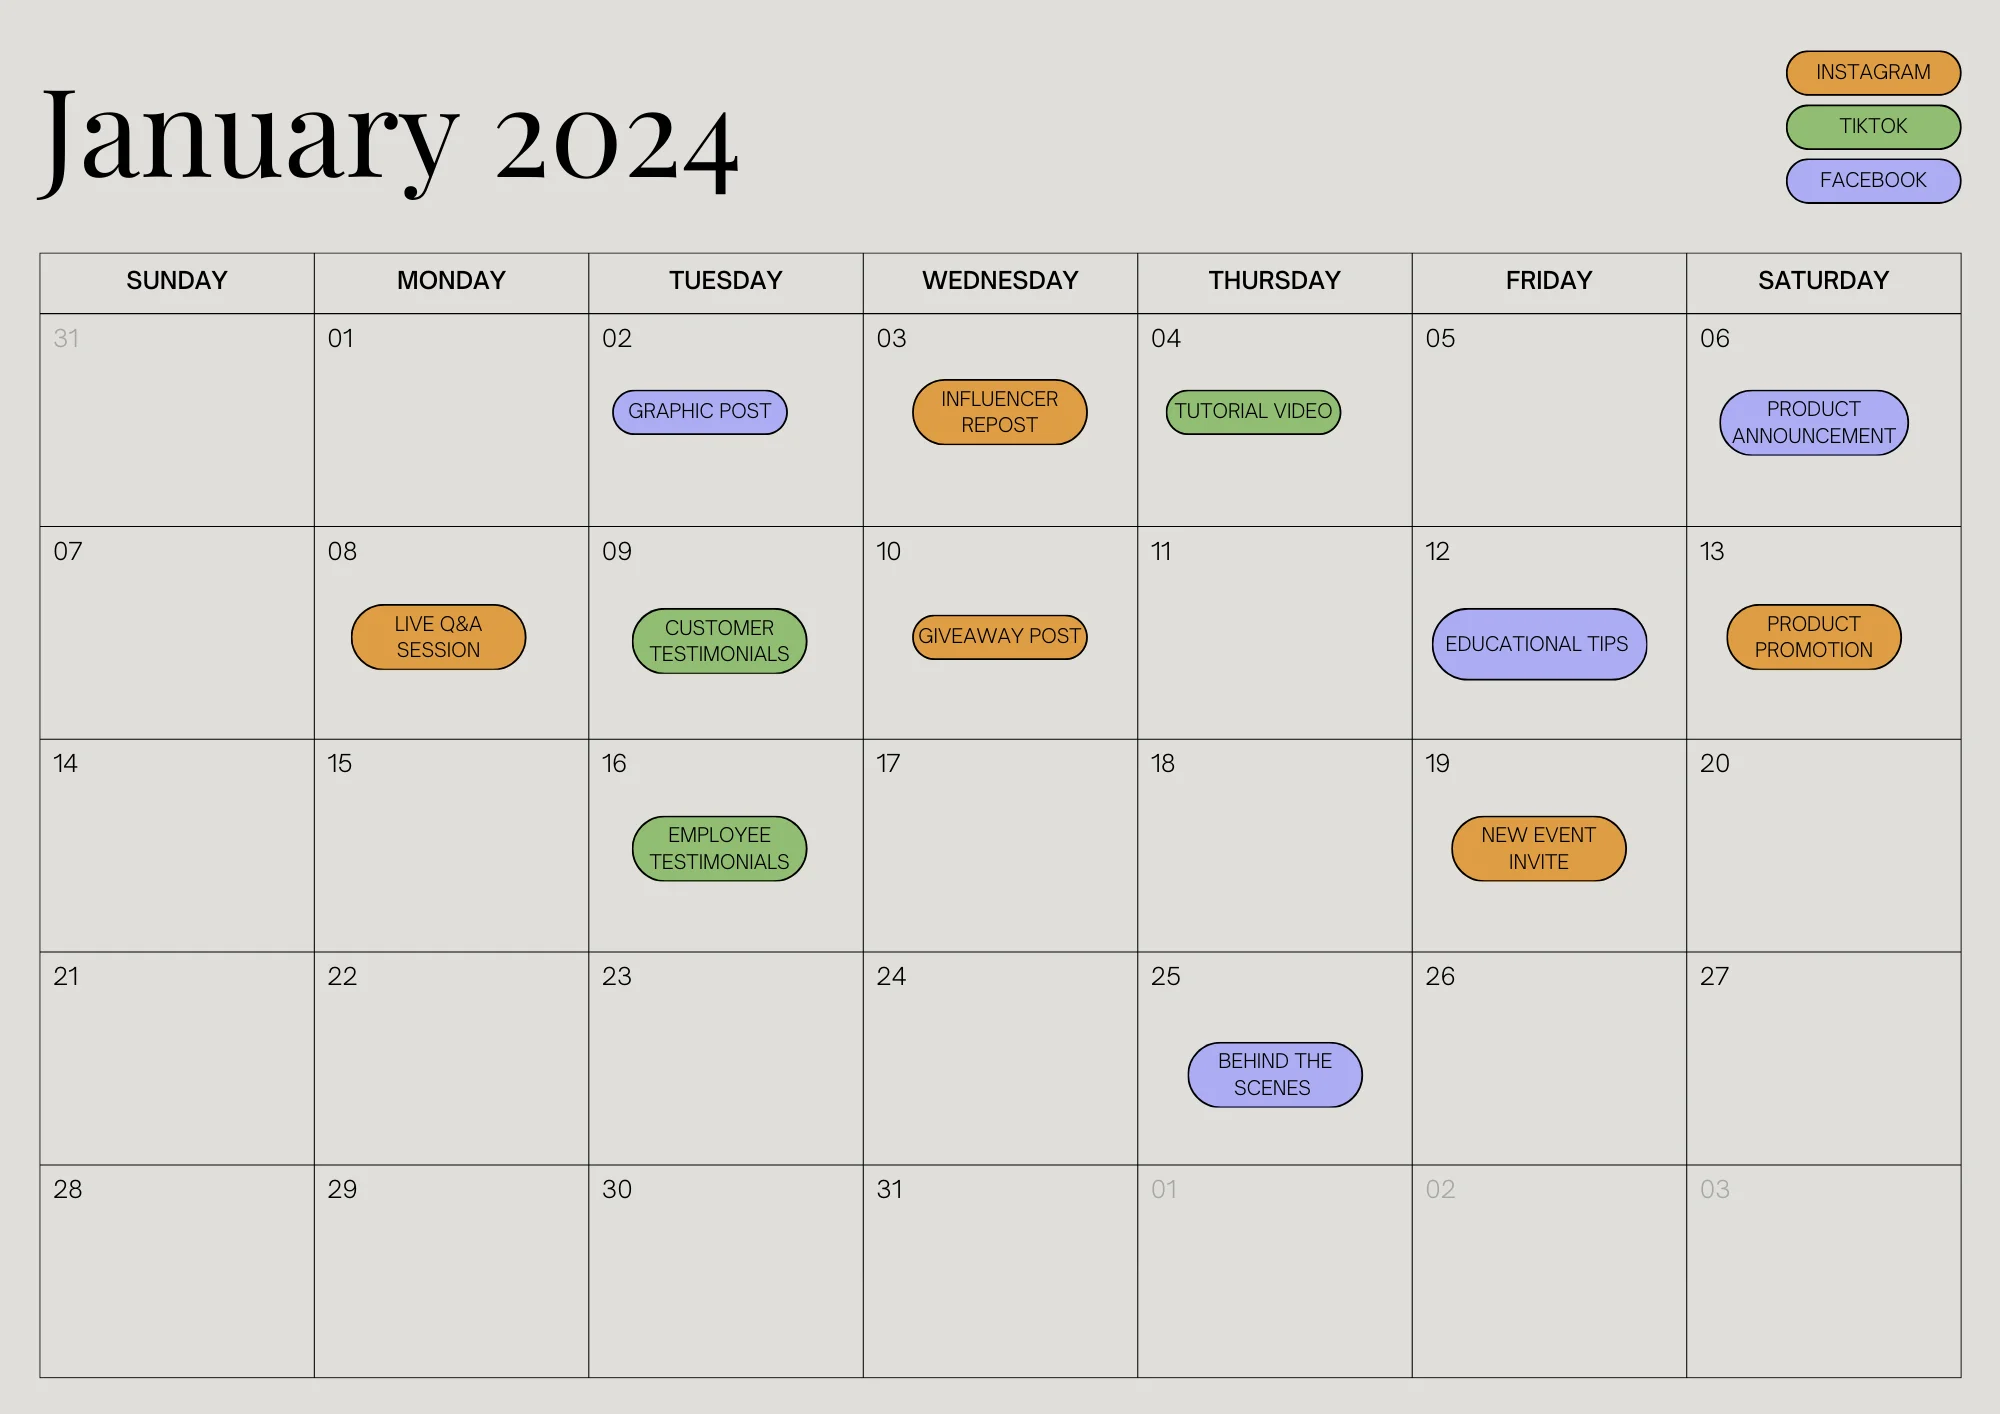 An example of a social media content calendar